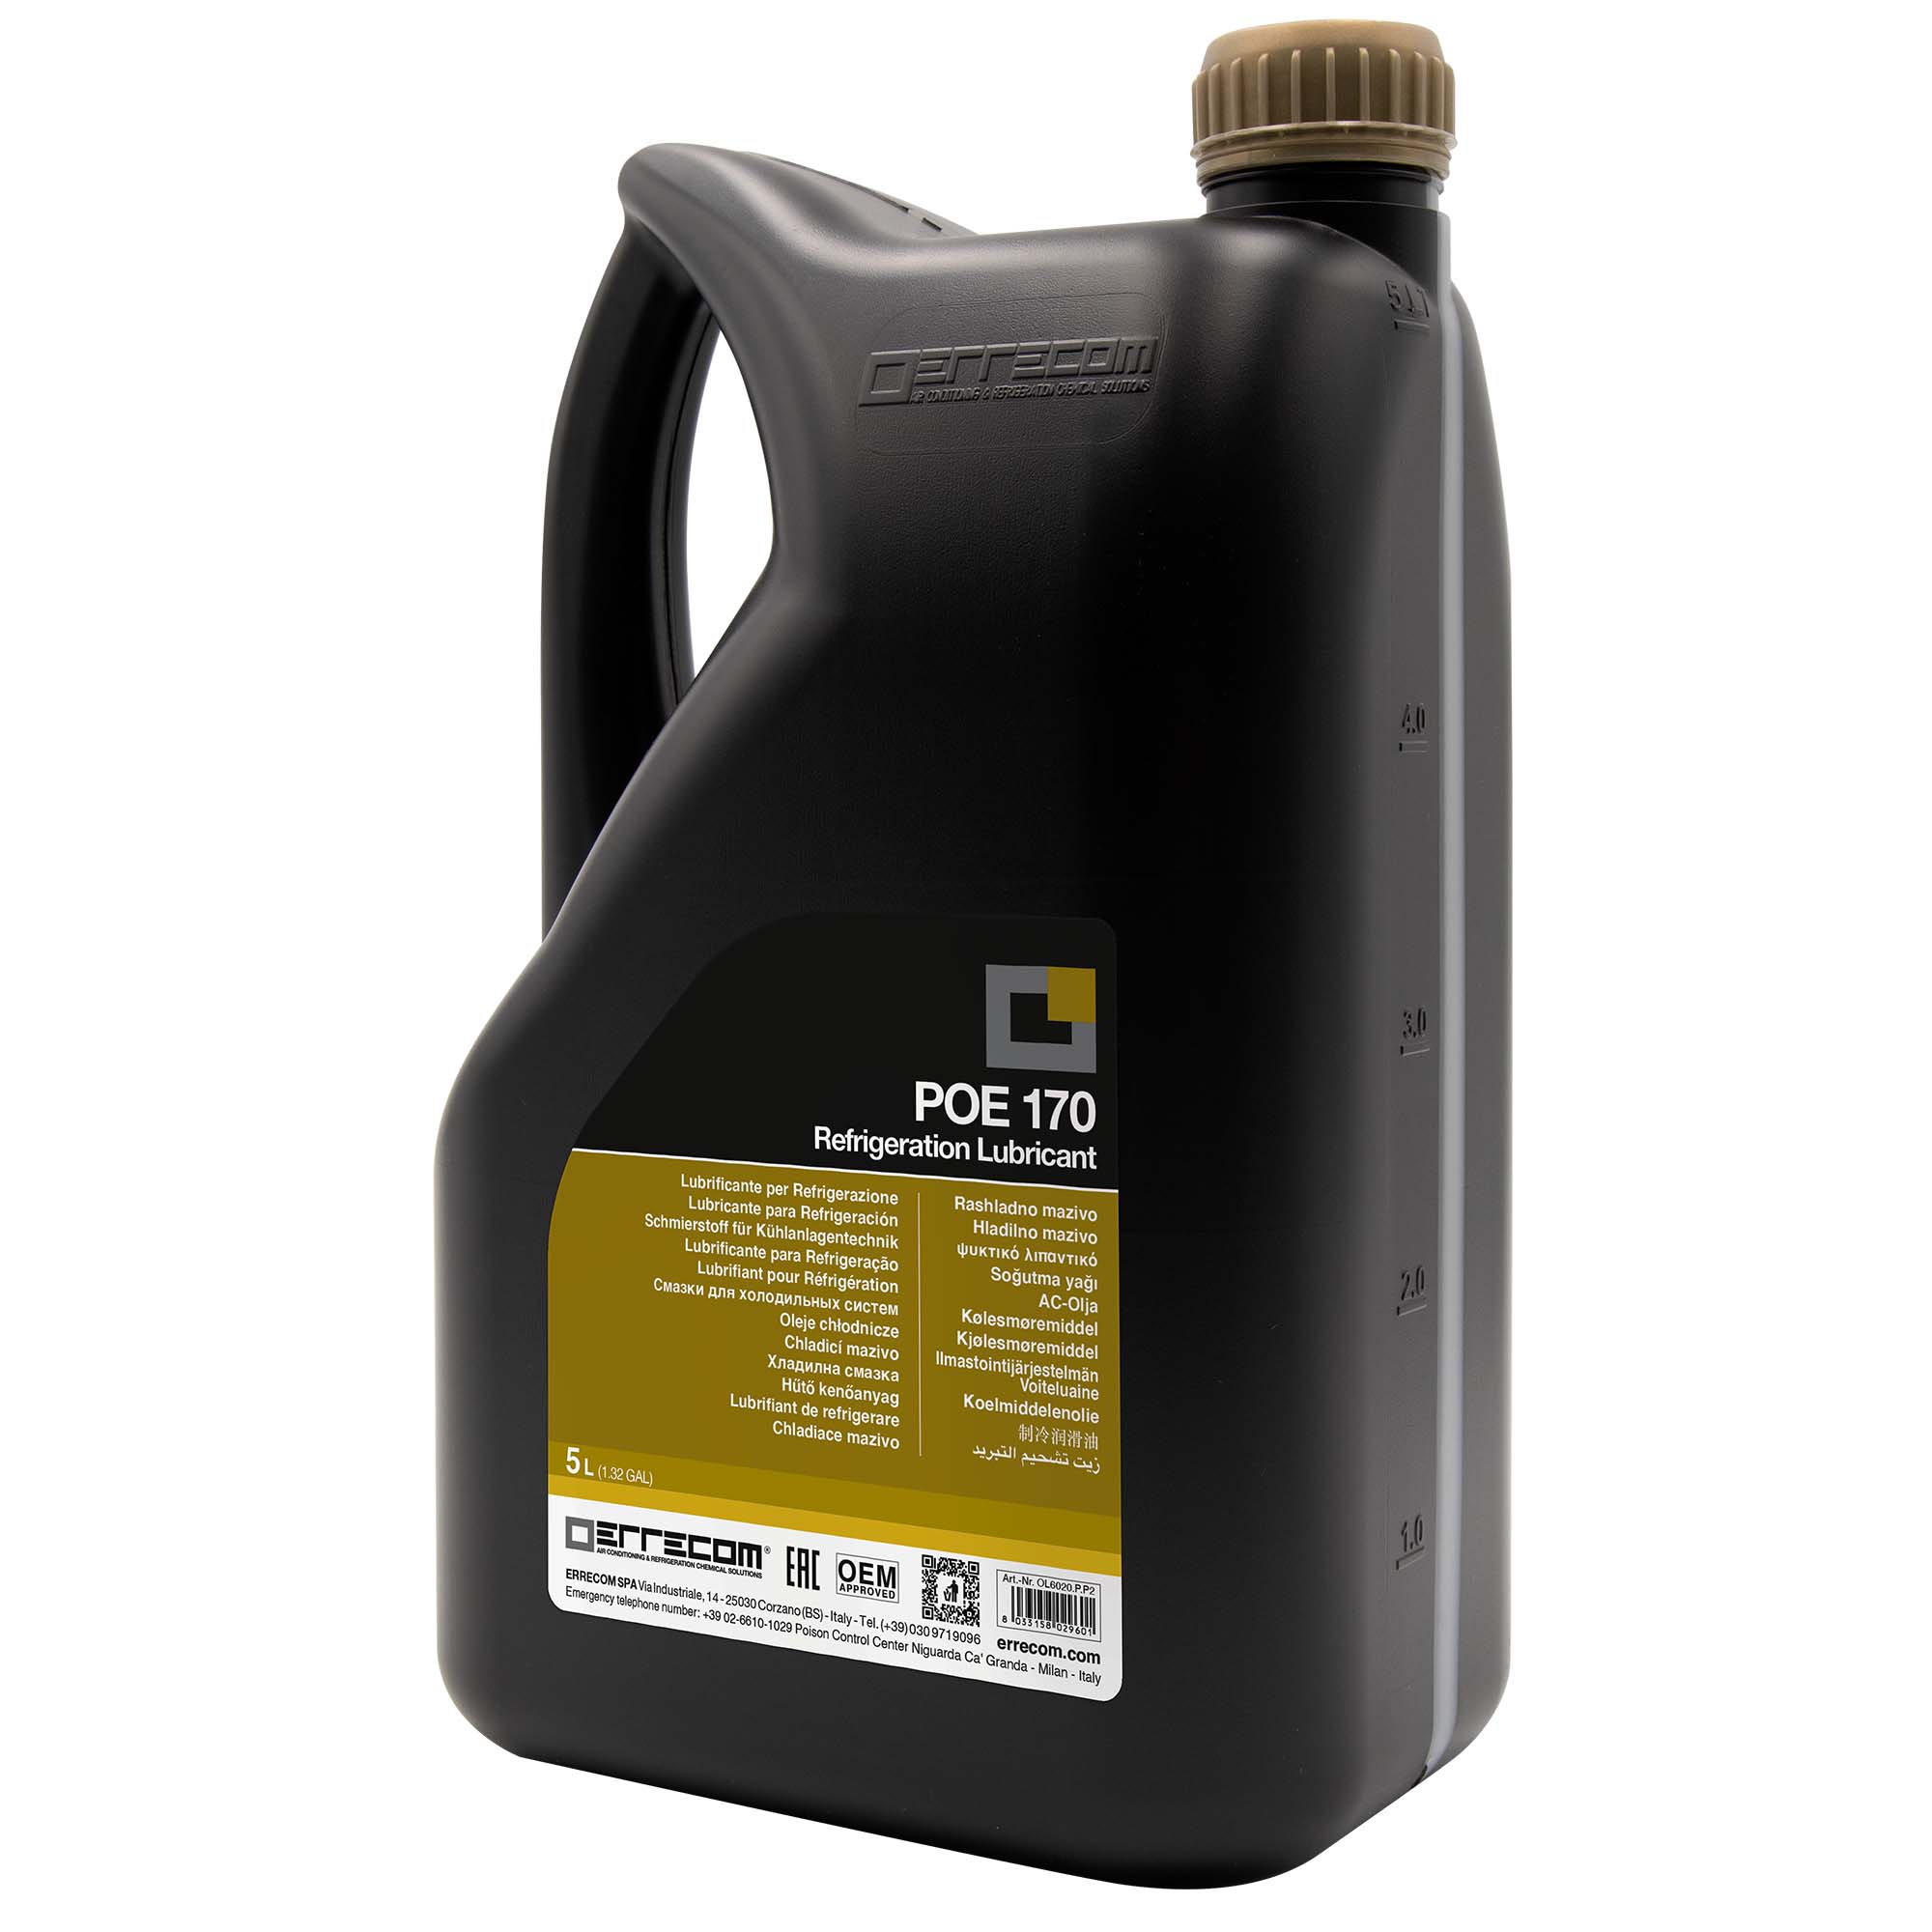 2 x Olio lubrificante R&AC Polyol Estere (POE) Errecom 170 - Tanica in Plastica da 5 lt. - Confezione n° 2 pz. (totale 10 litri)